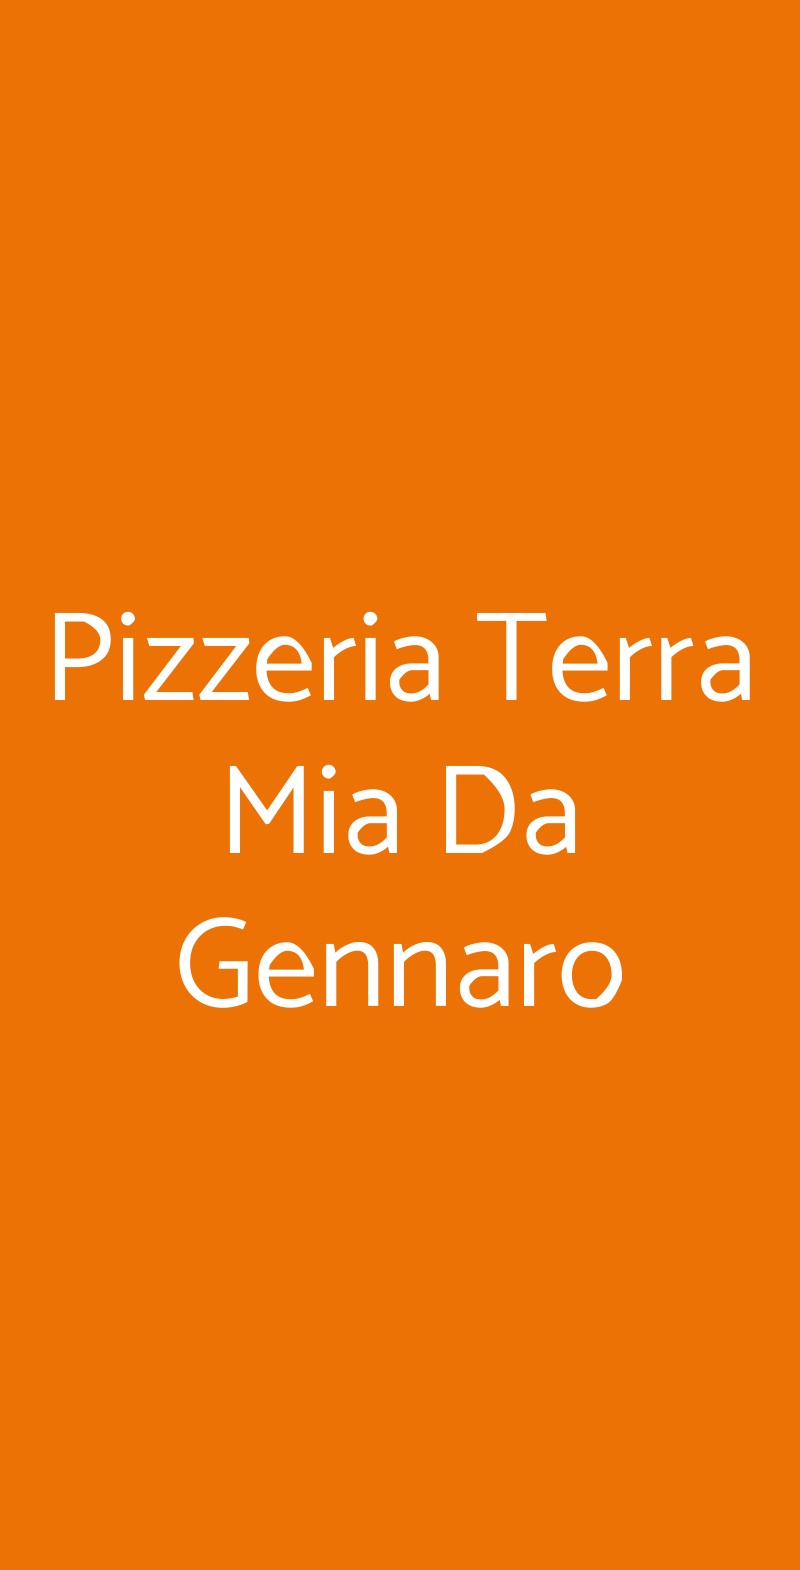 Pizzeria Terra Mia Da Gennaro Settimo Milanese menù 1 pagina